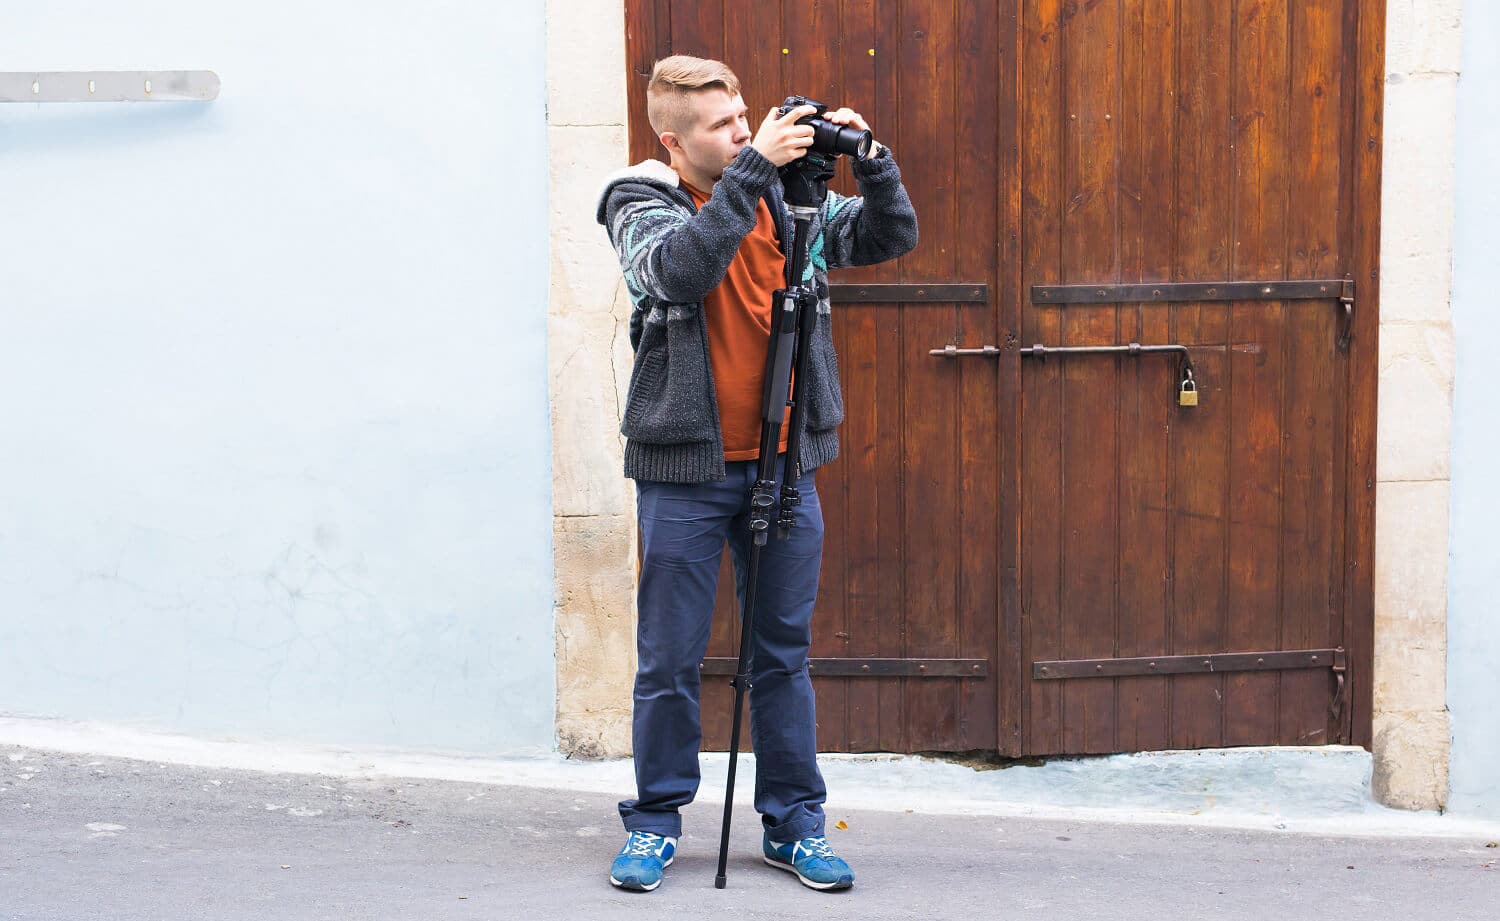 Ein junger Fotograf mit einem ausgefahrenen Einbeinstativ vor blauer Hauswand.